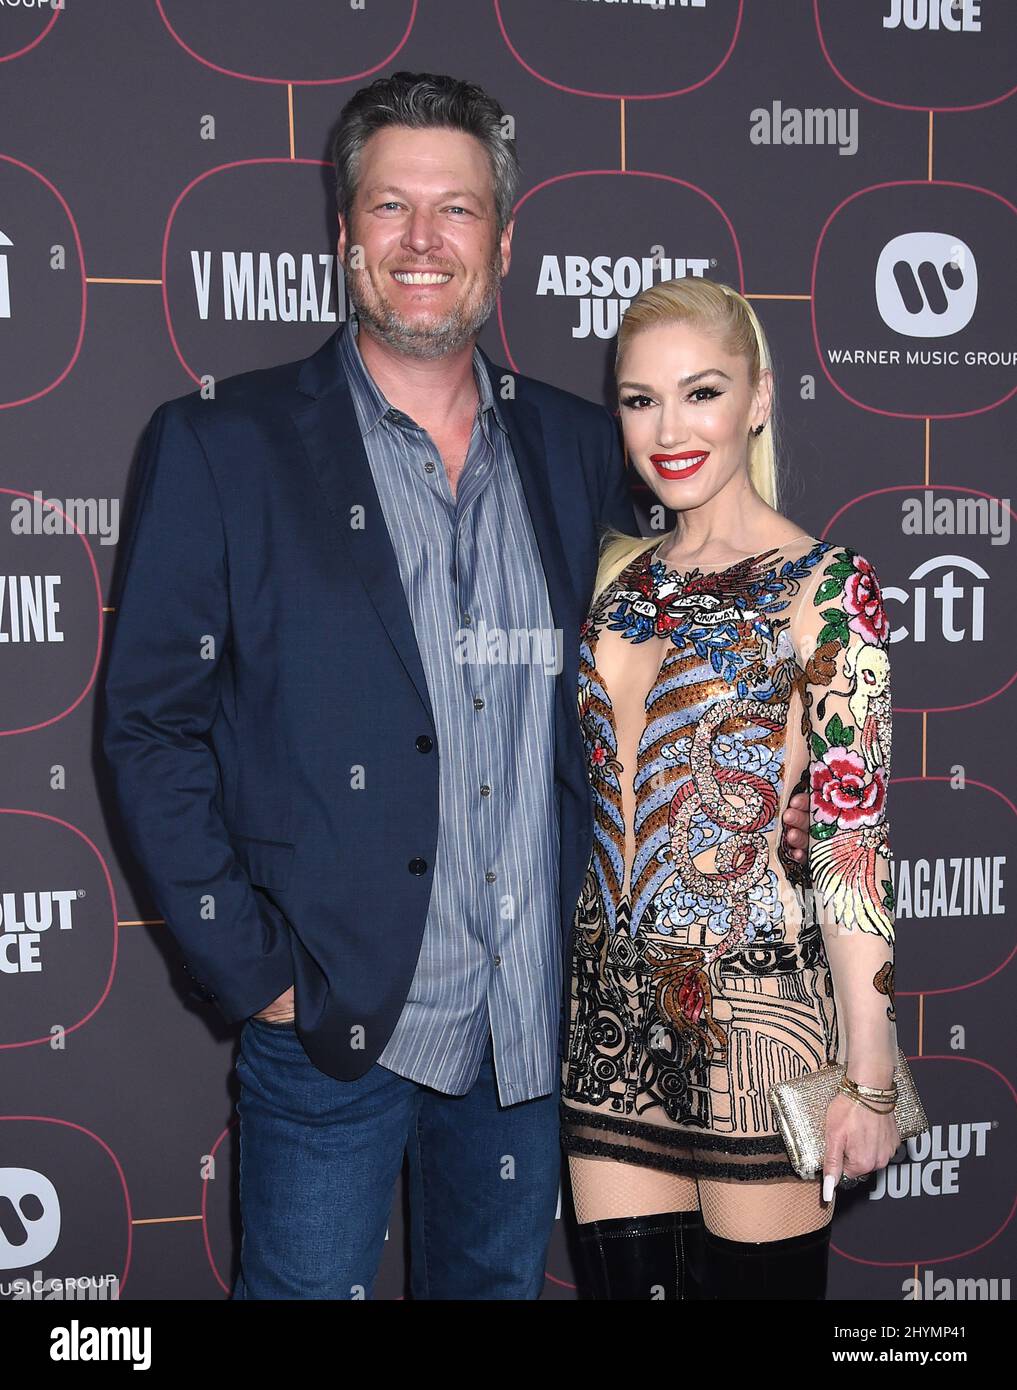 Blake Shelton e Gwen Stefani al Warner Music Group Pre-Grammy Party tenutosi presso l'Hollywood Athletic Club il 23 gennaio 2020 a Hollywood, Los Angeles. Foto Stock